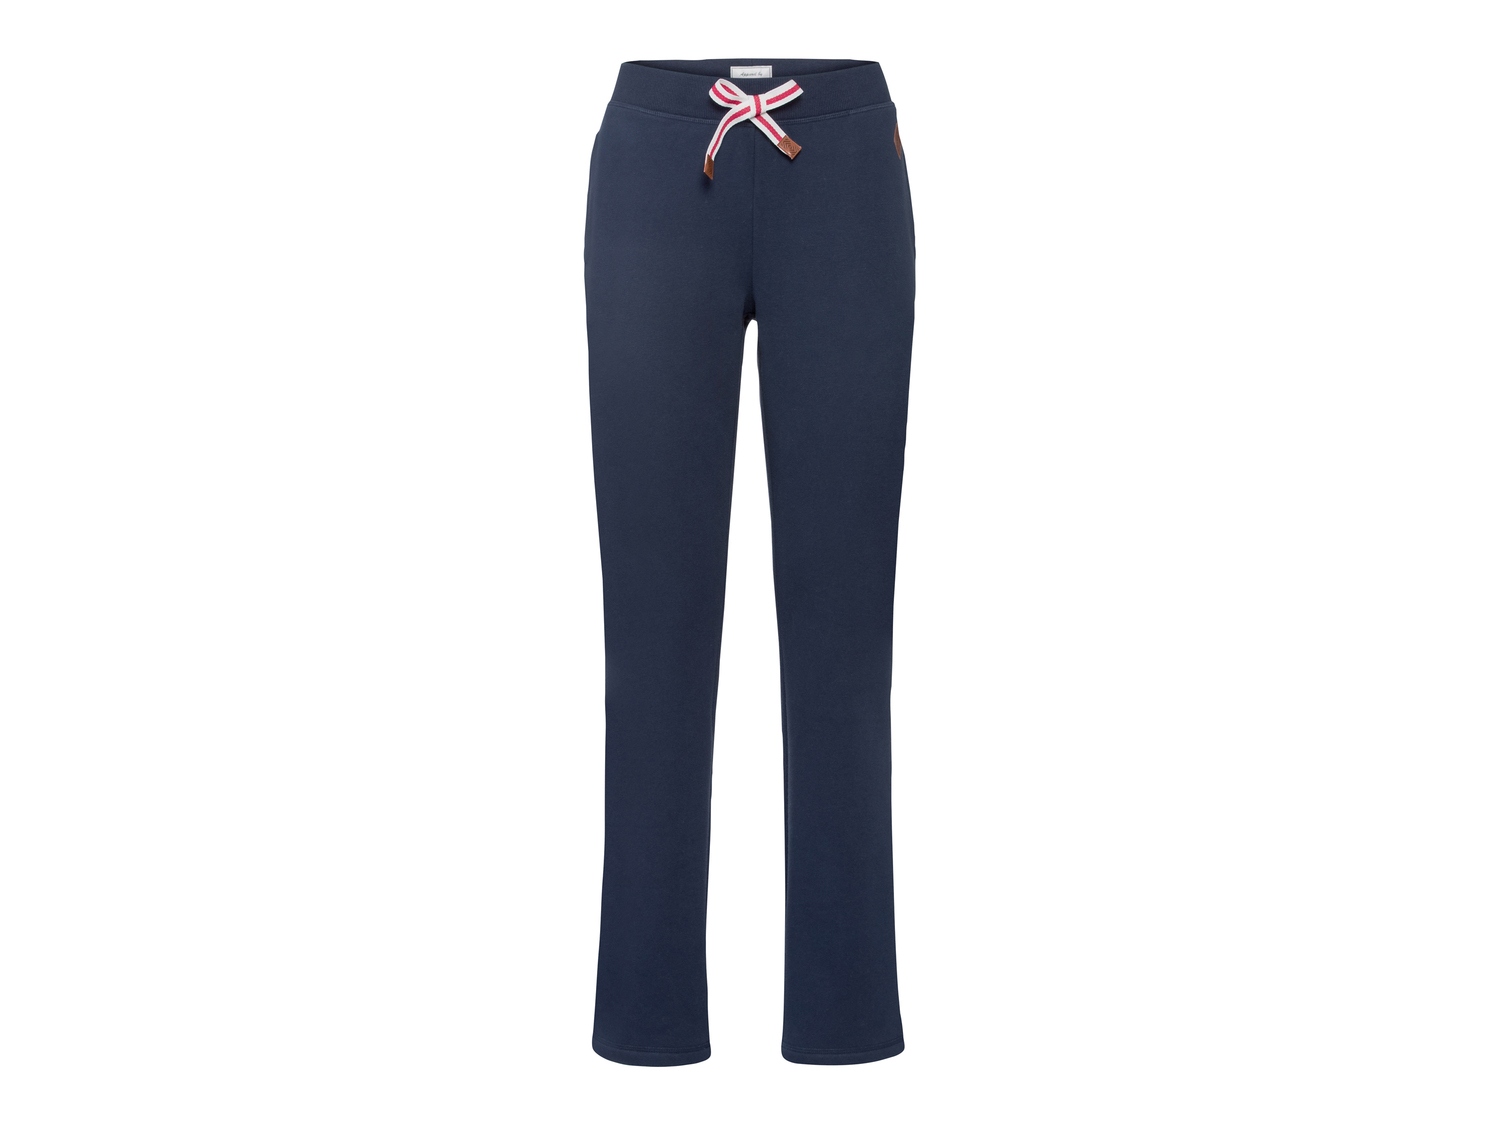 Pantaloni sportivi da donna Esmara, prezzo 11.99 &#8364; 
Misure: S-L
Caratteristiche

- ...